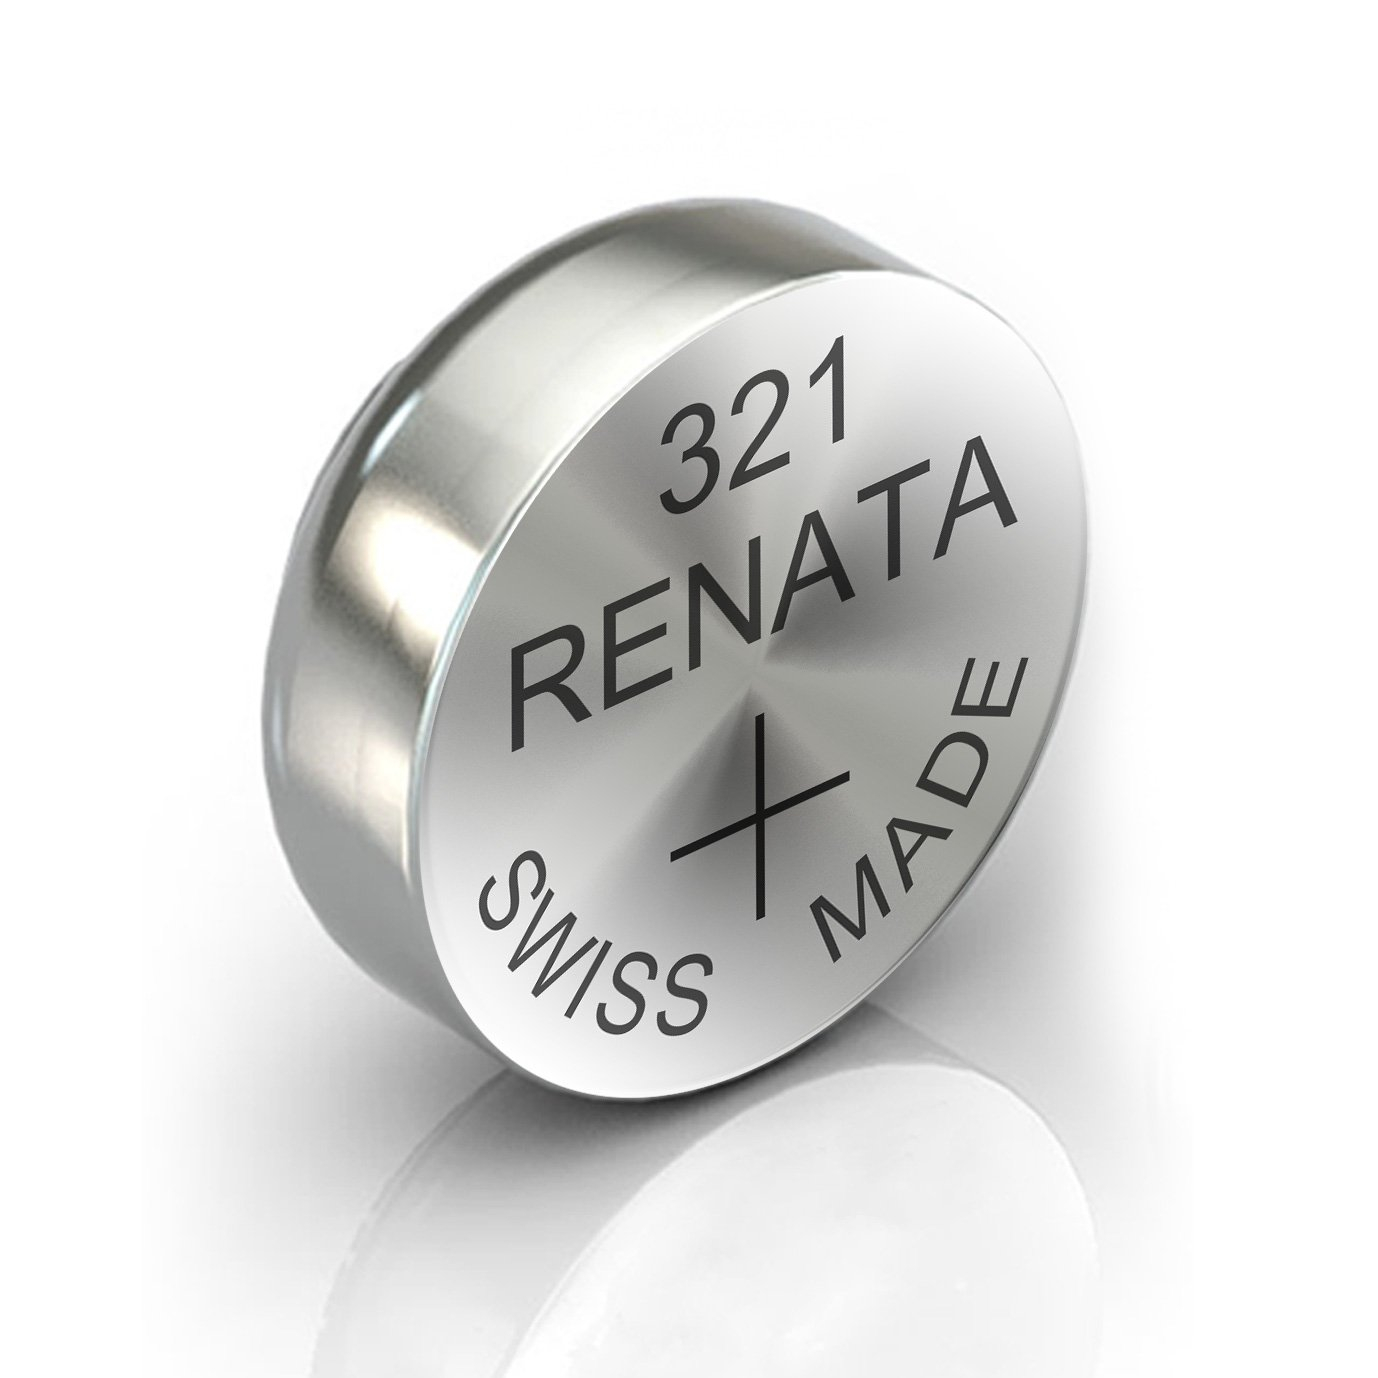 Baterie RENATA Watch 321 BL1